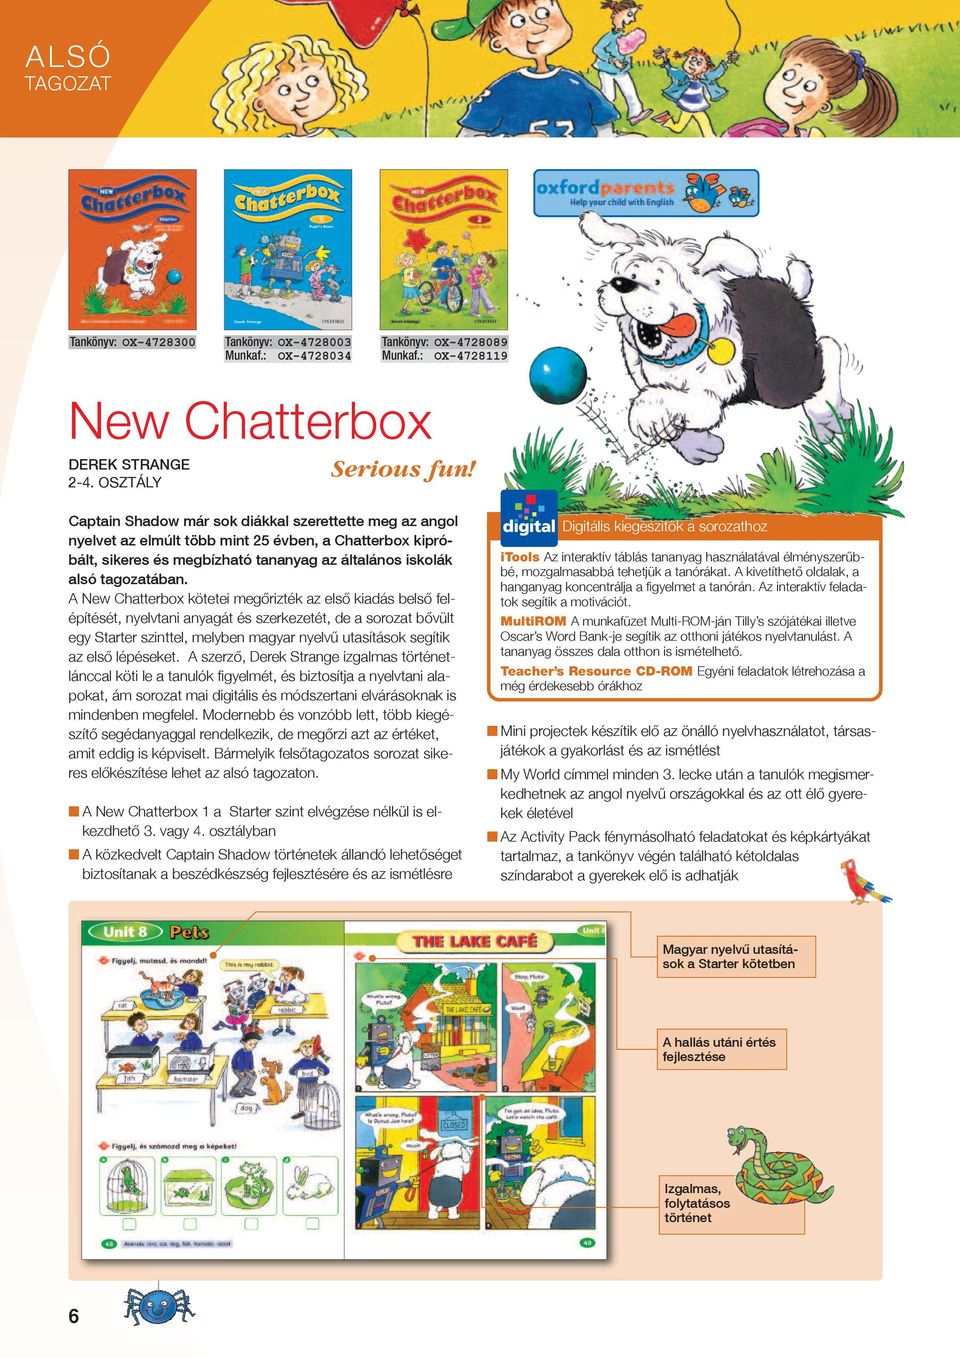 A New Chatterbox kötetei megőrizték az első kiadás belső felépítését, nyelvtani anyagát és szerkezetét, de a sorozat bővült egy Starter szinttel, melyben magyar nyelvű utasítások segítik az első lépé